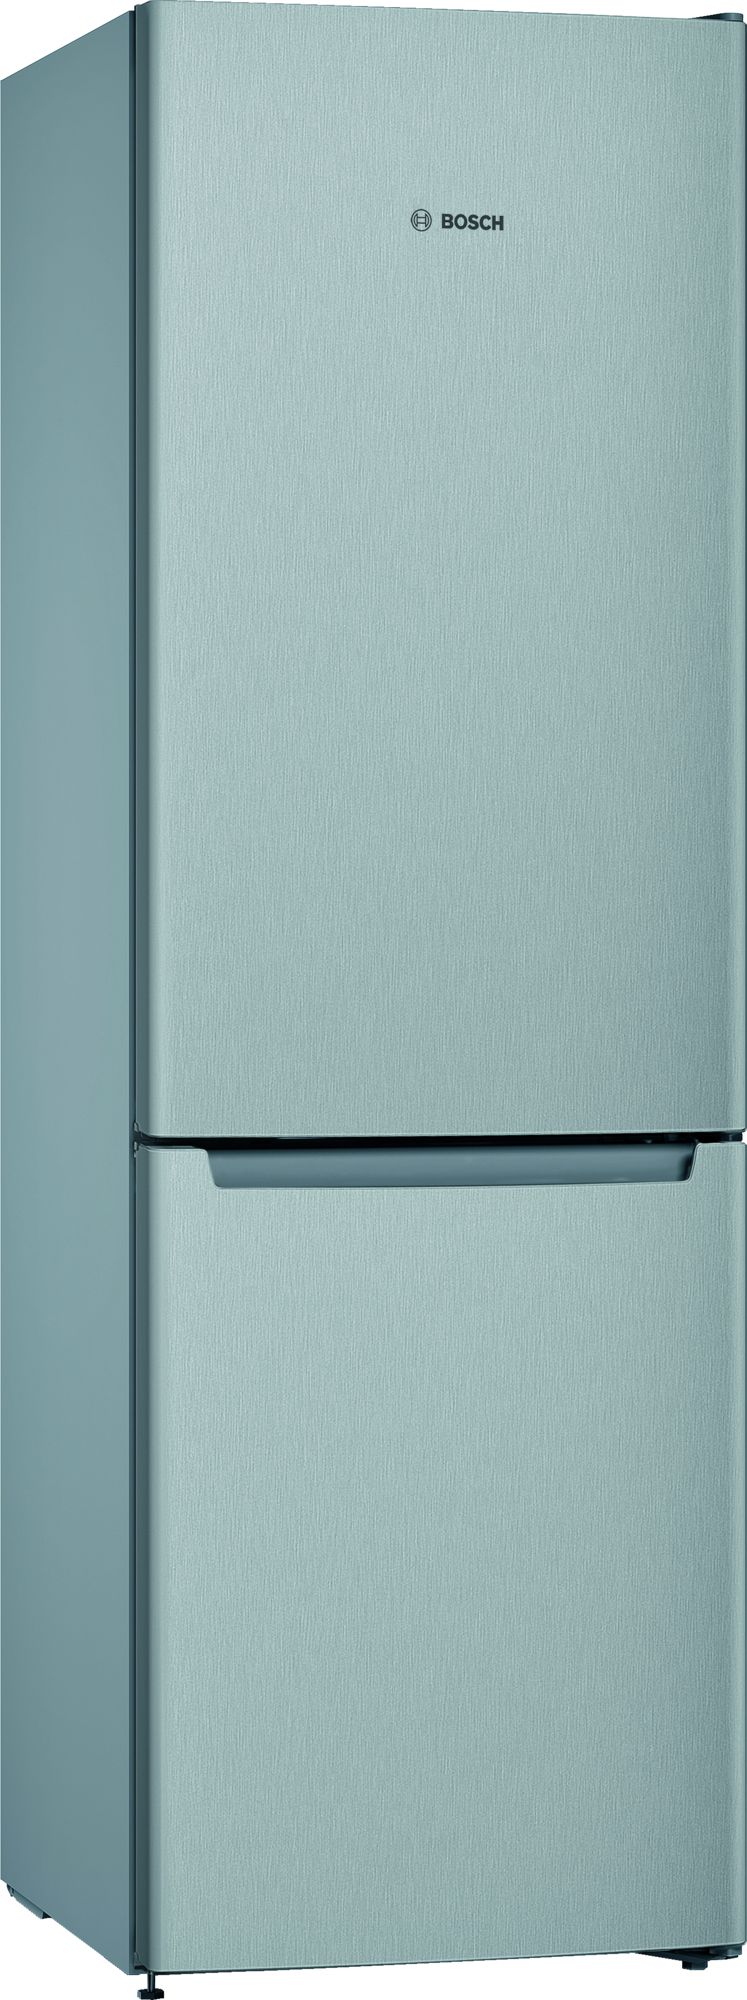 BOSCH KGN36ELEA combiné réfrigérateur-congélateur pose-libre - 186cm